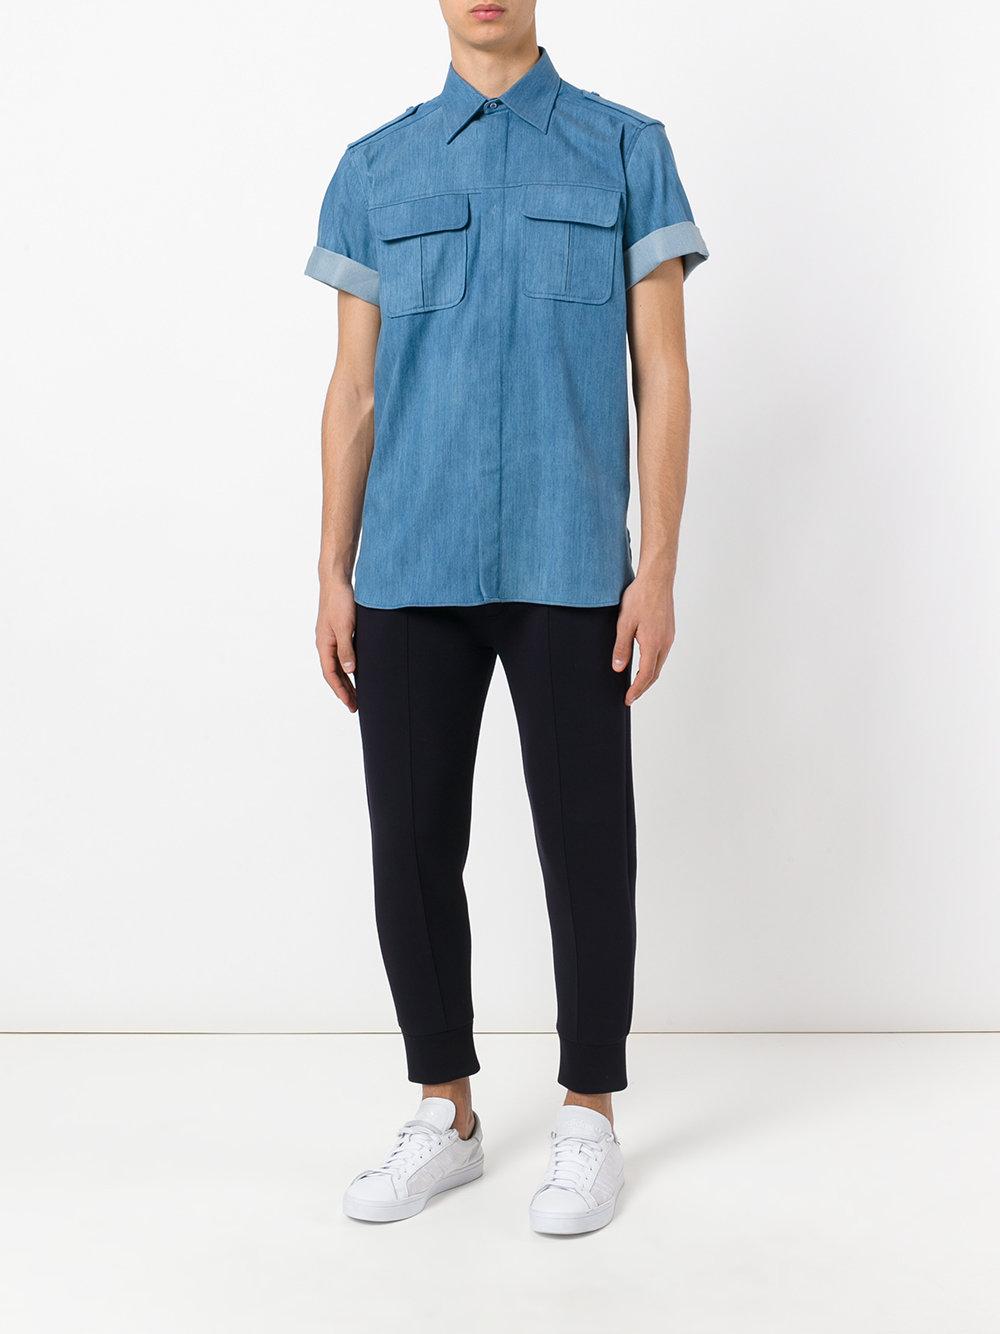 Lyst - Neil barrett Short Sleeve Denim Shirt in Blue for Men